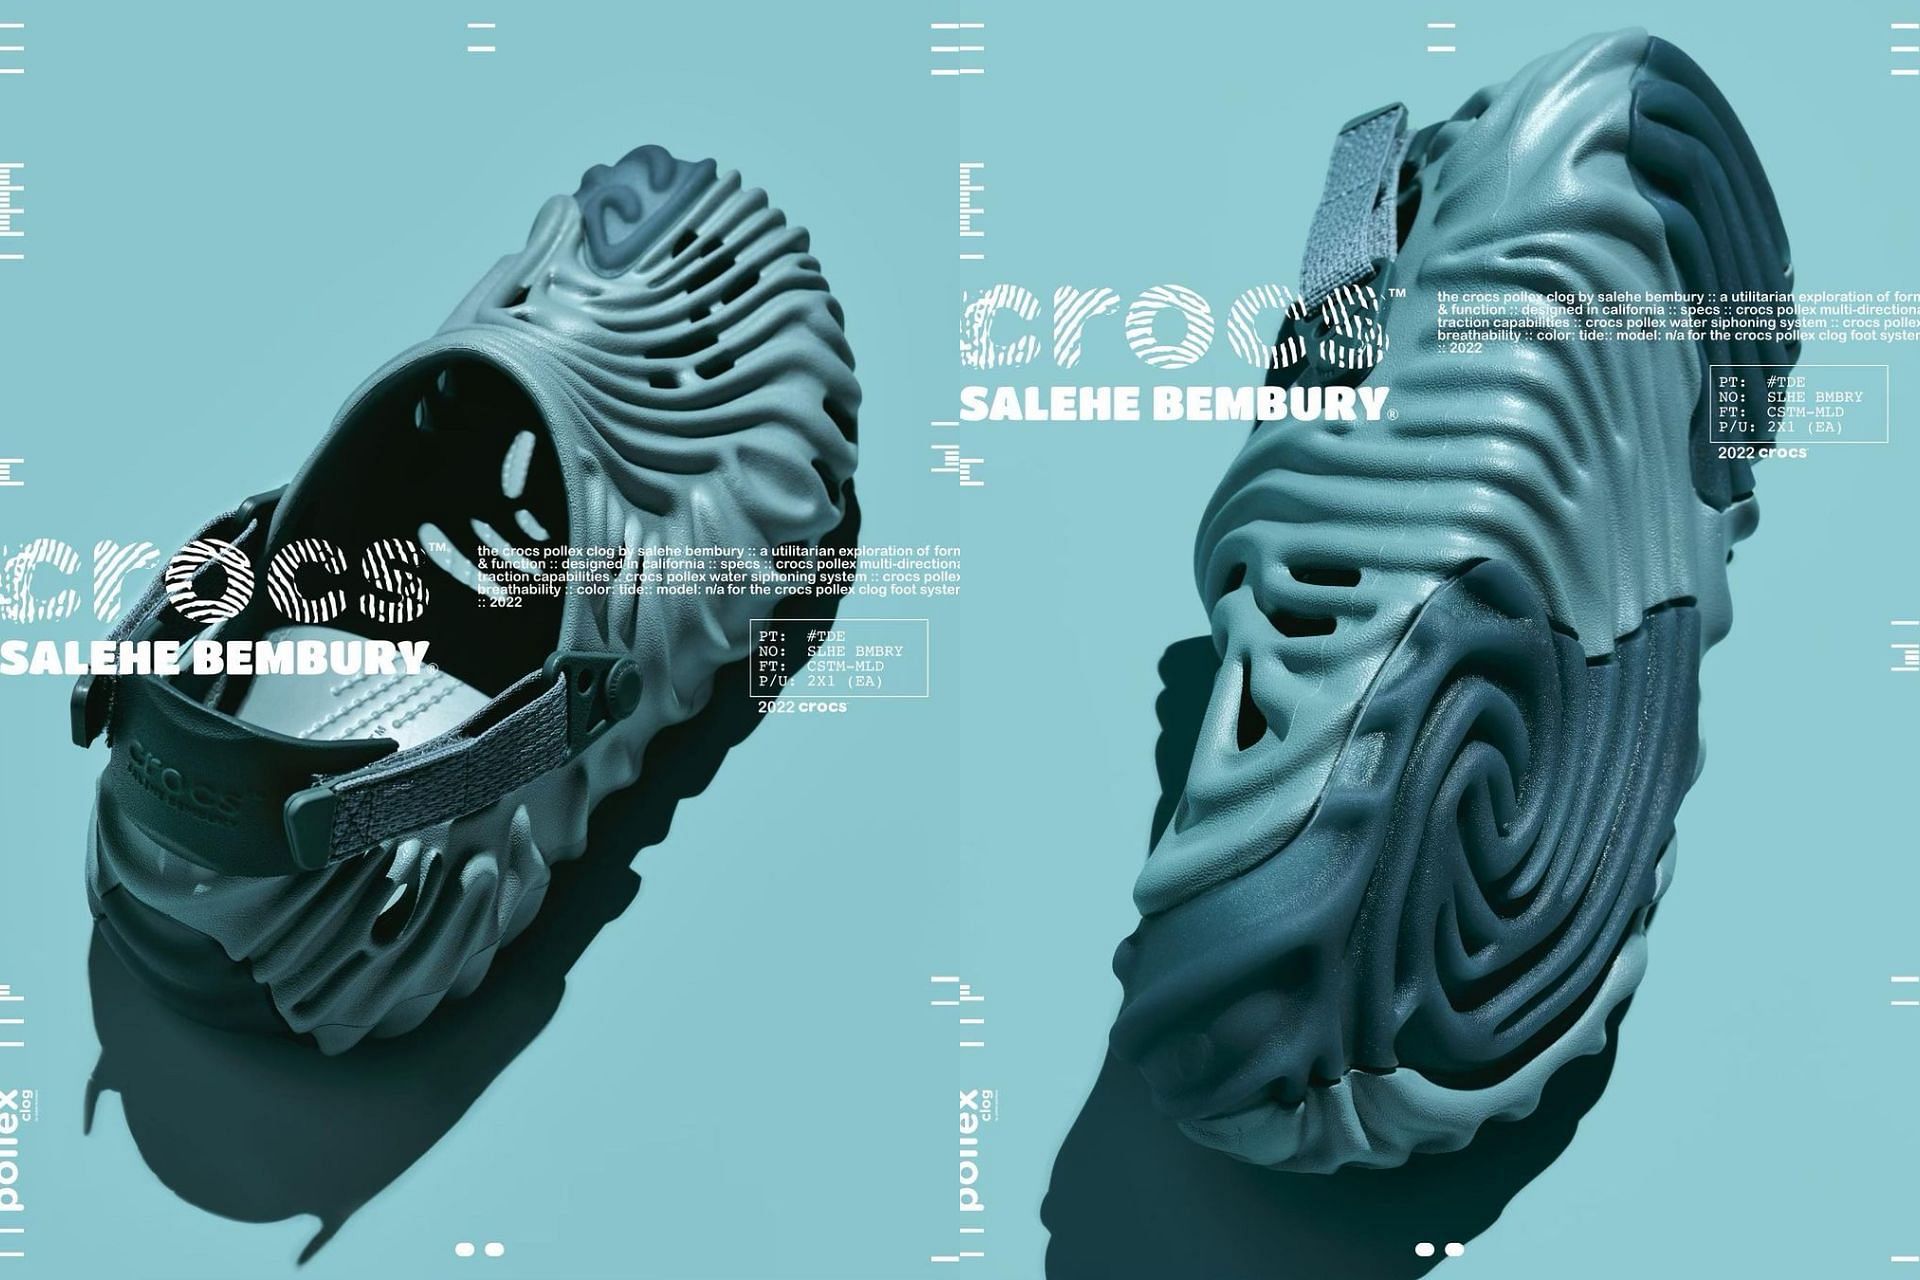 Salehe Bembury x Crocs Tide (Image via @salehebembury / Instagram)